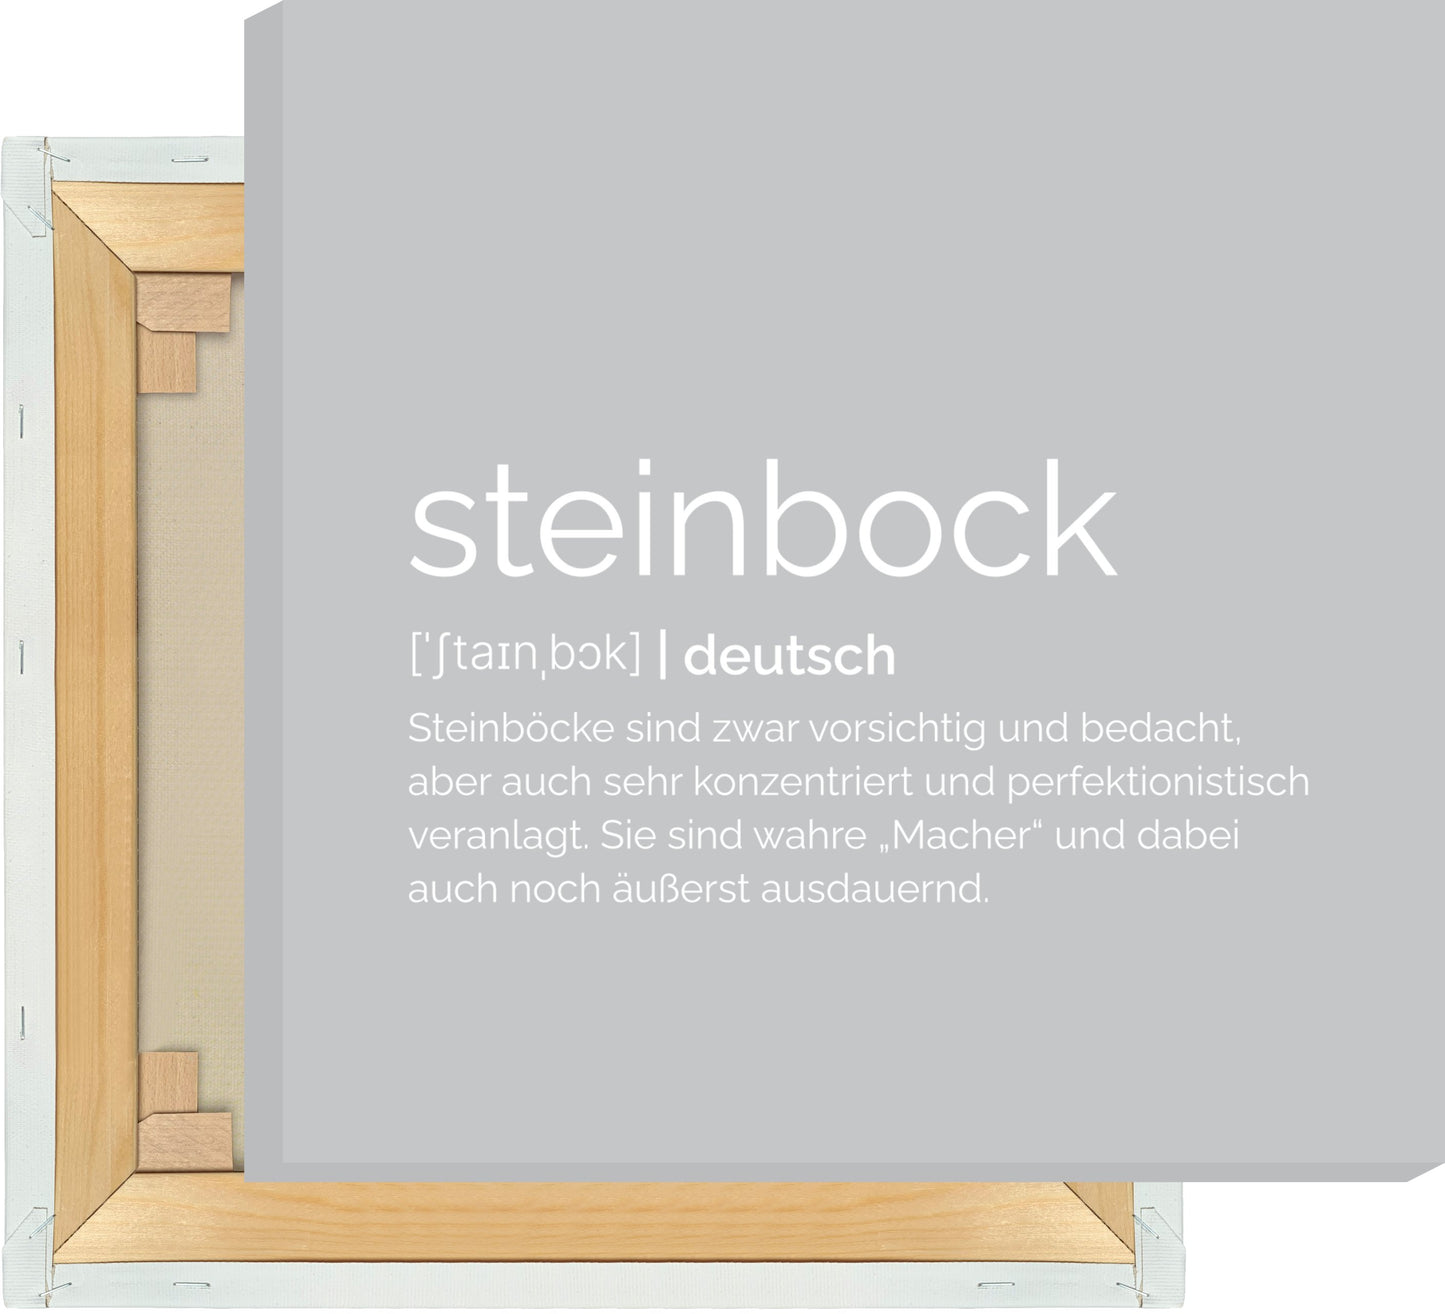 Leinwand Sternzeichen Steinbock - Definition